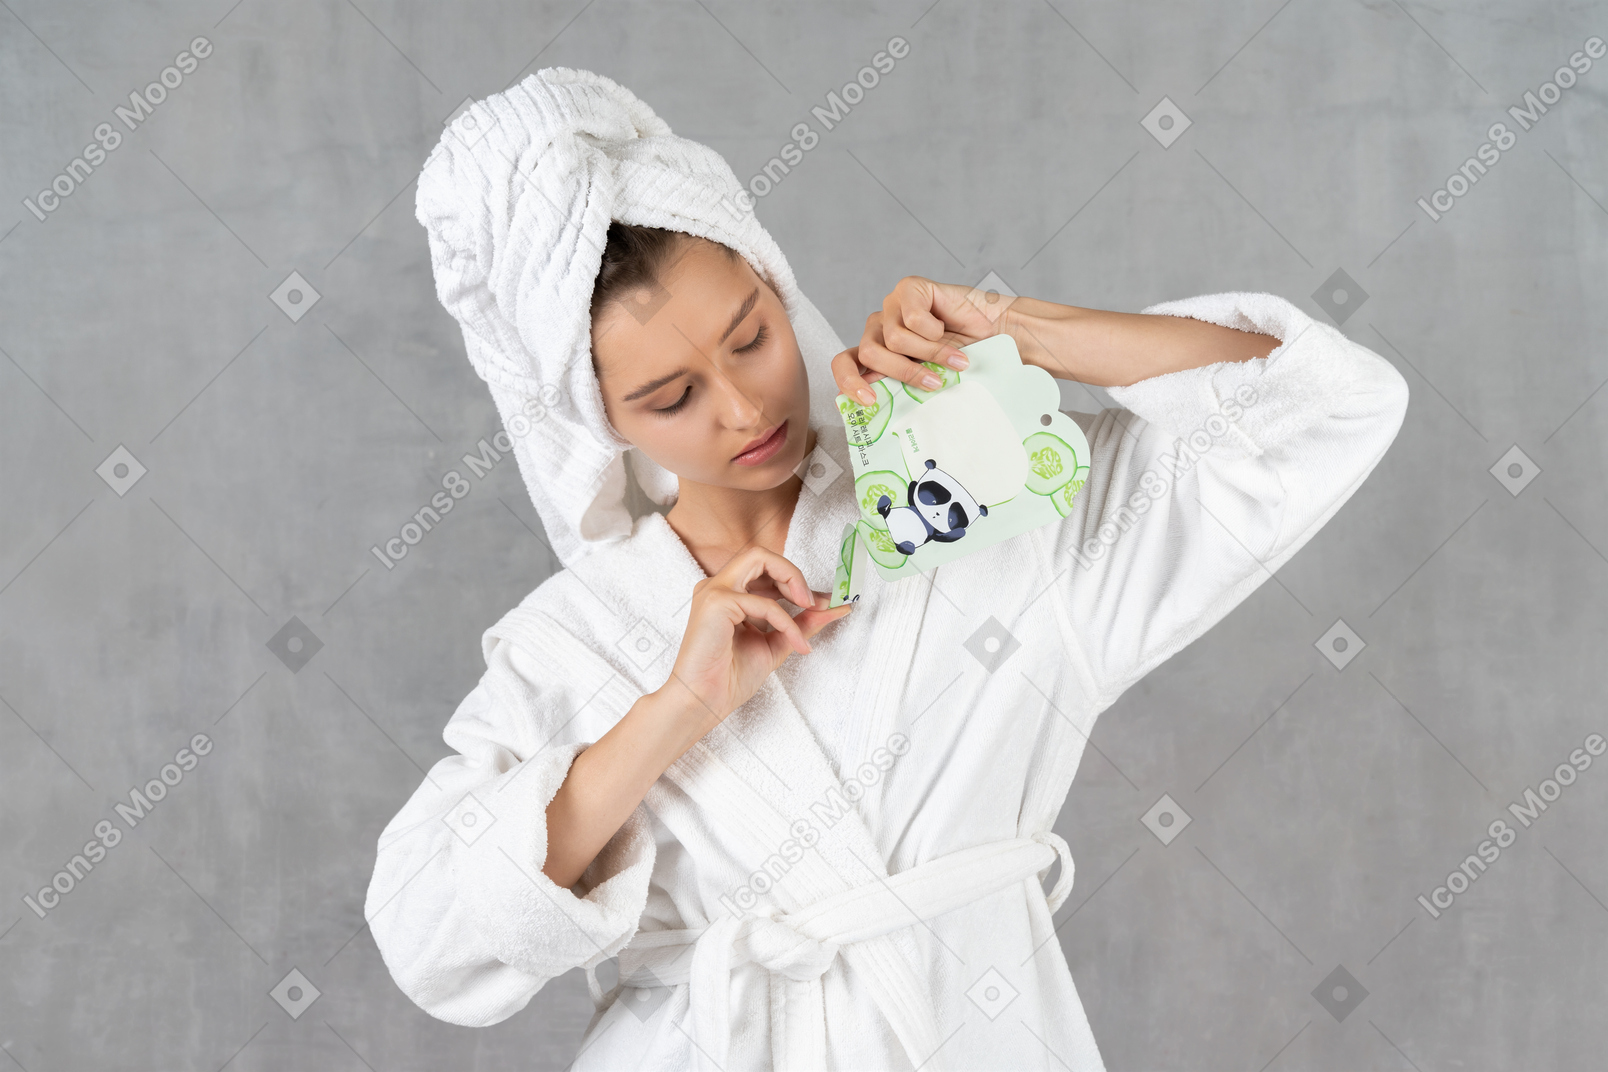 Frau im bademantel, die eine blattmaskenpackung öffnet